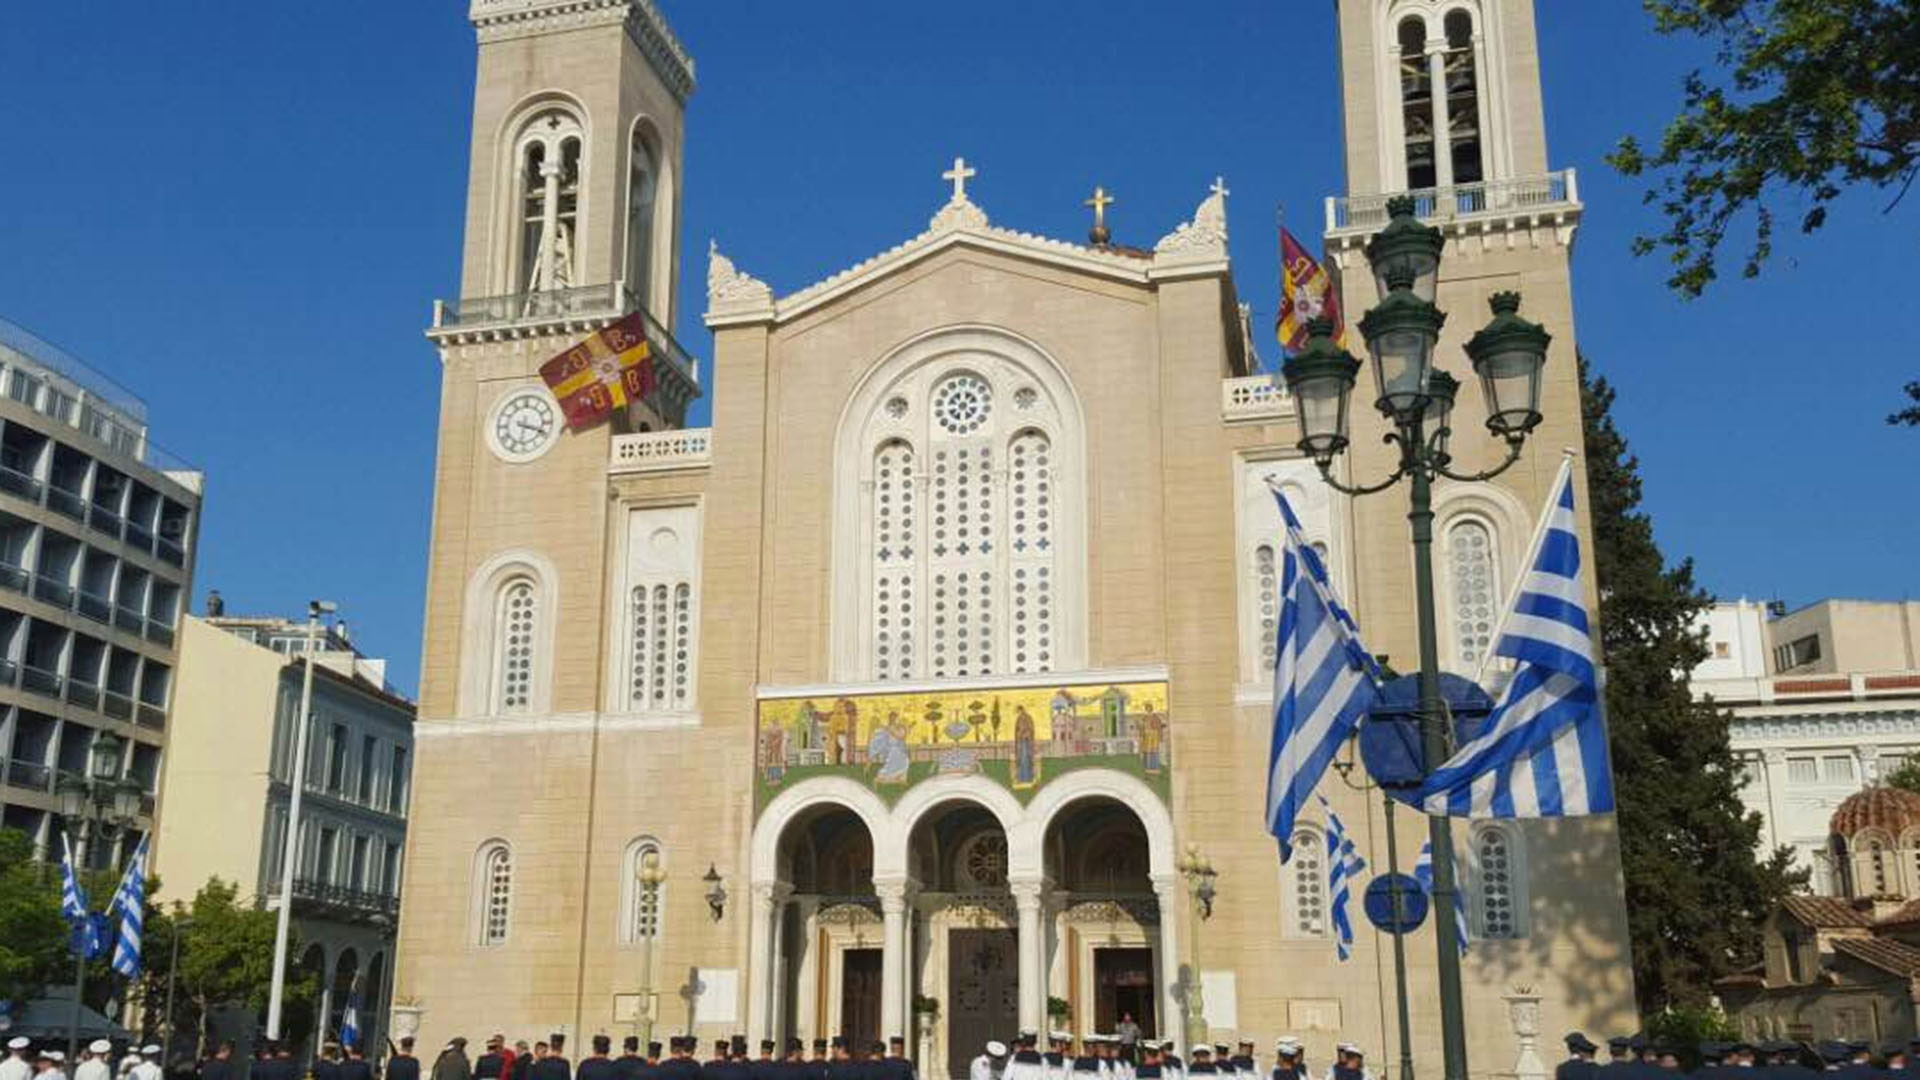 Στα Εξάρχεια μεταφέρεται εσπευσμένα η Μητρόπολη Αθηνών μετά την ανυπακοή της Εκκλησίας στην κυβέρνηση